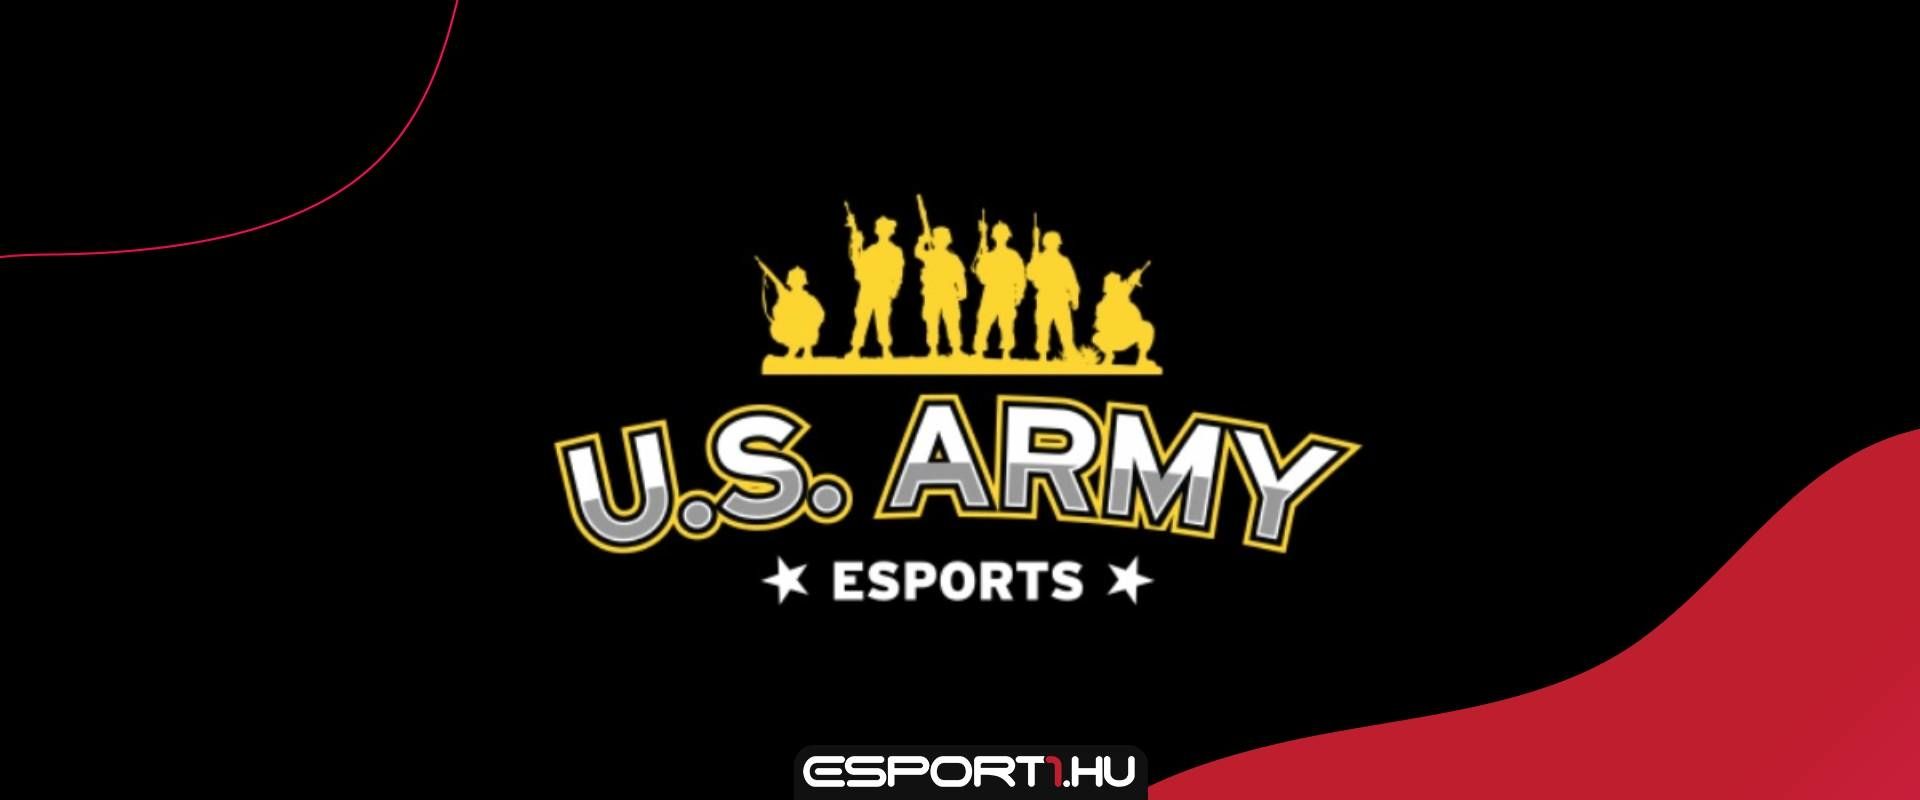 Call of Duty bajnoksággal toboroz az amerikai hadsereg